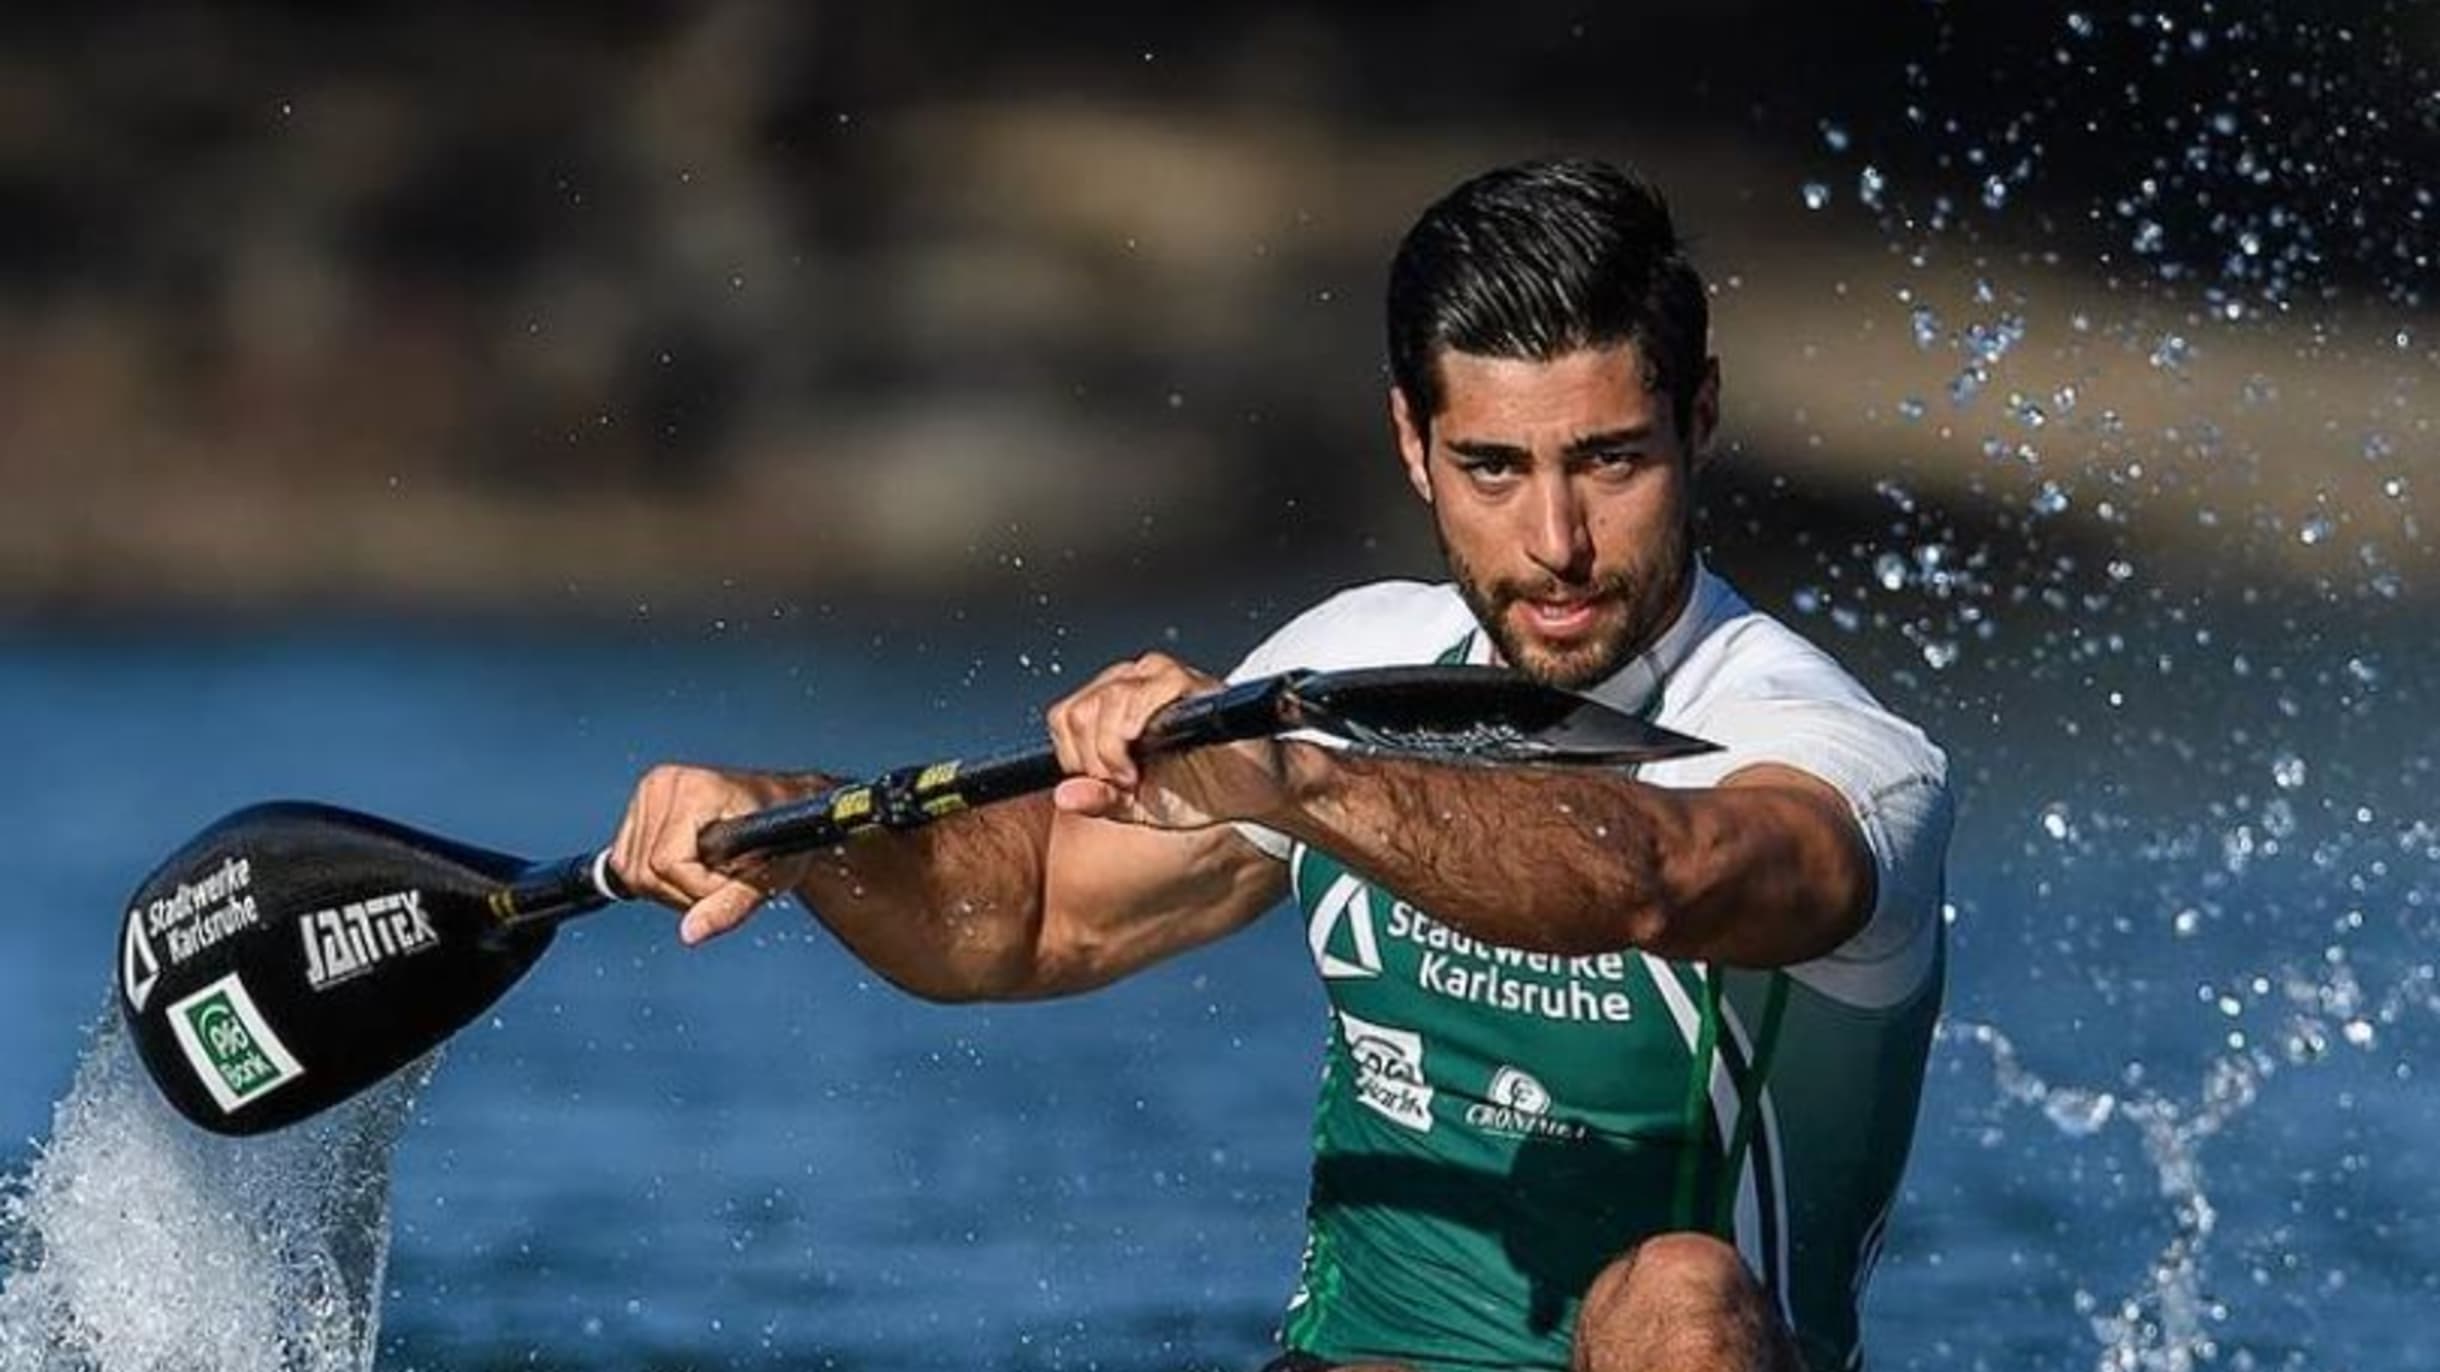 Saeid Fazloula Der Flüchtling und Kanu-Rennfahrer, der bei den Olympischen Spielen in Tokio für Furore sorgen will